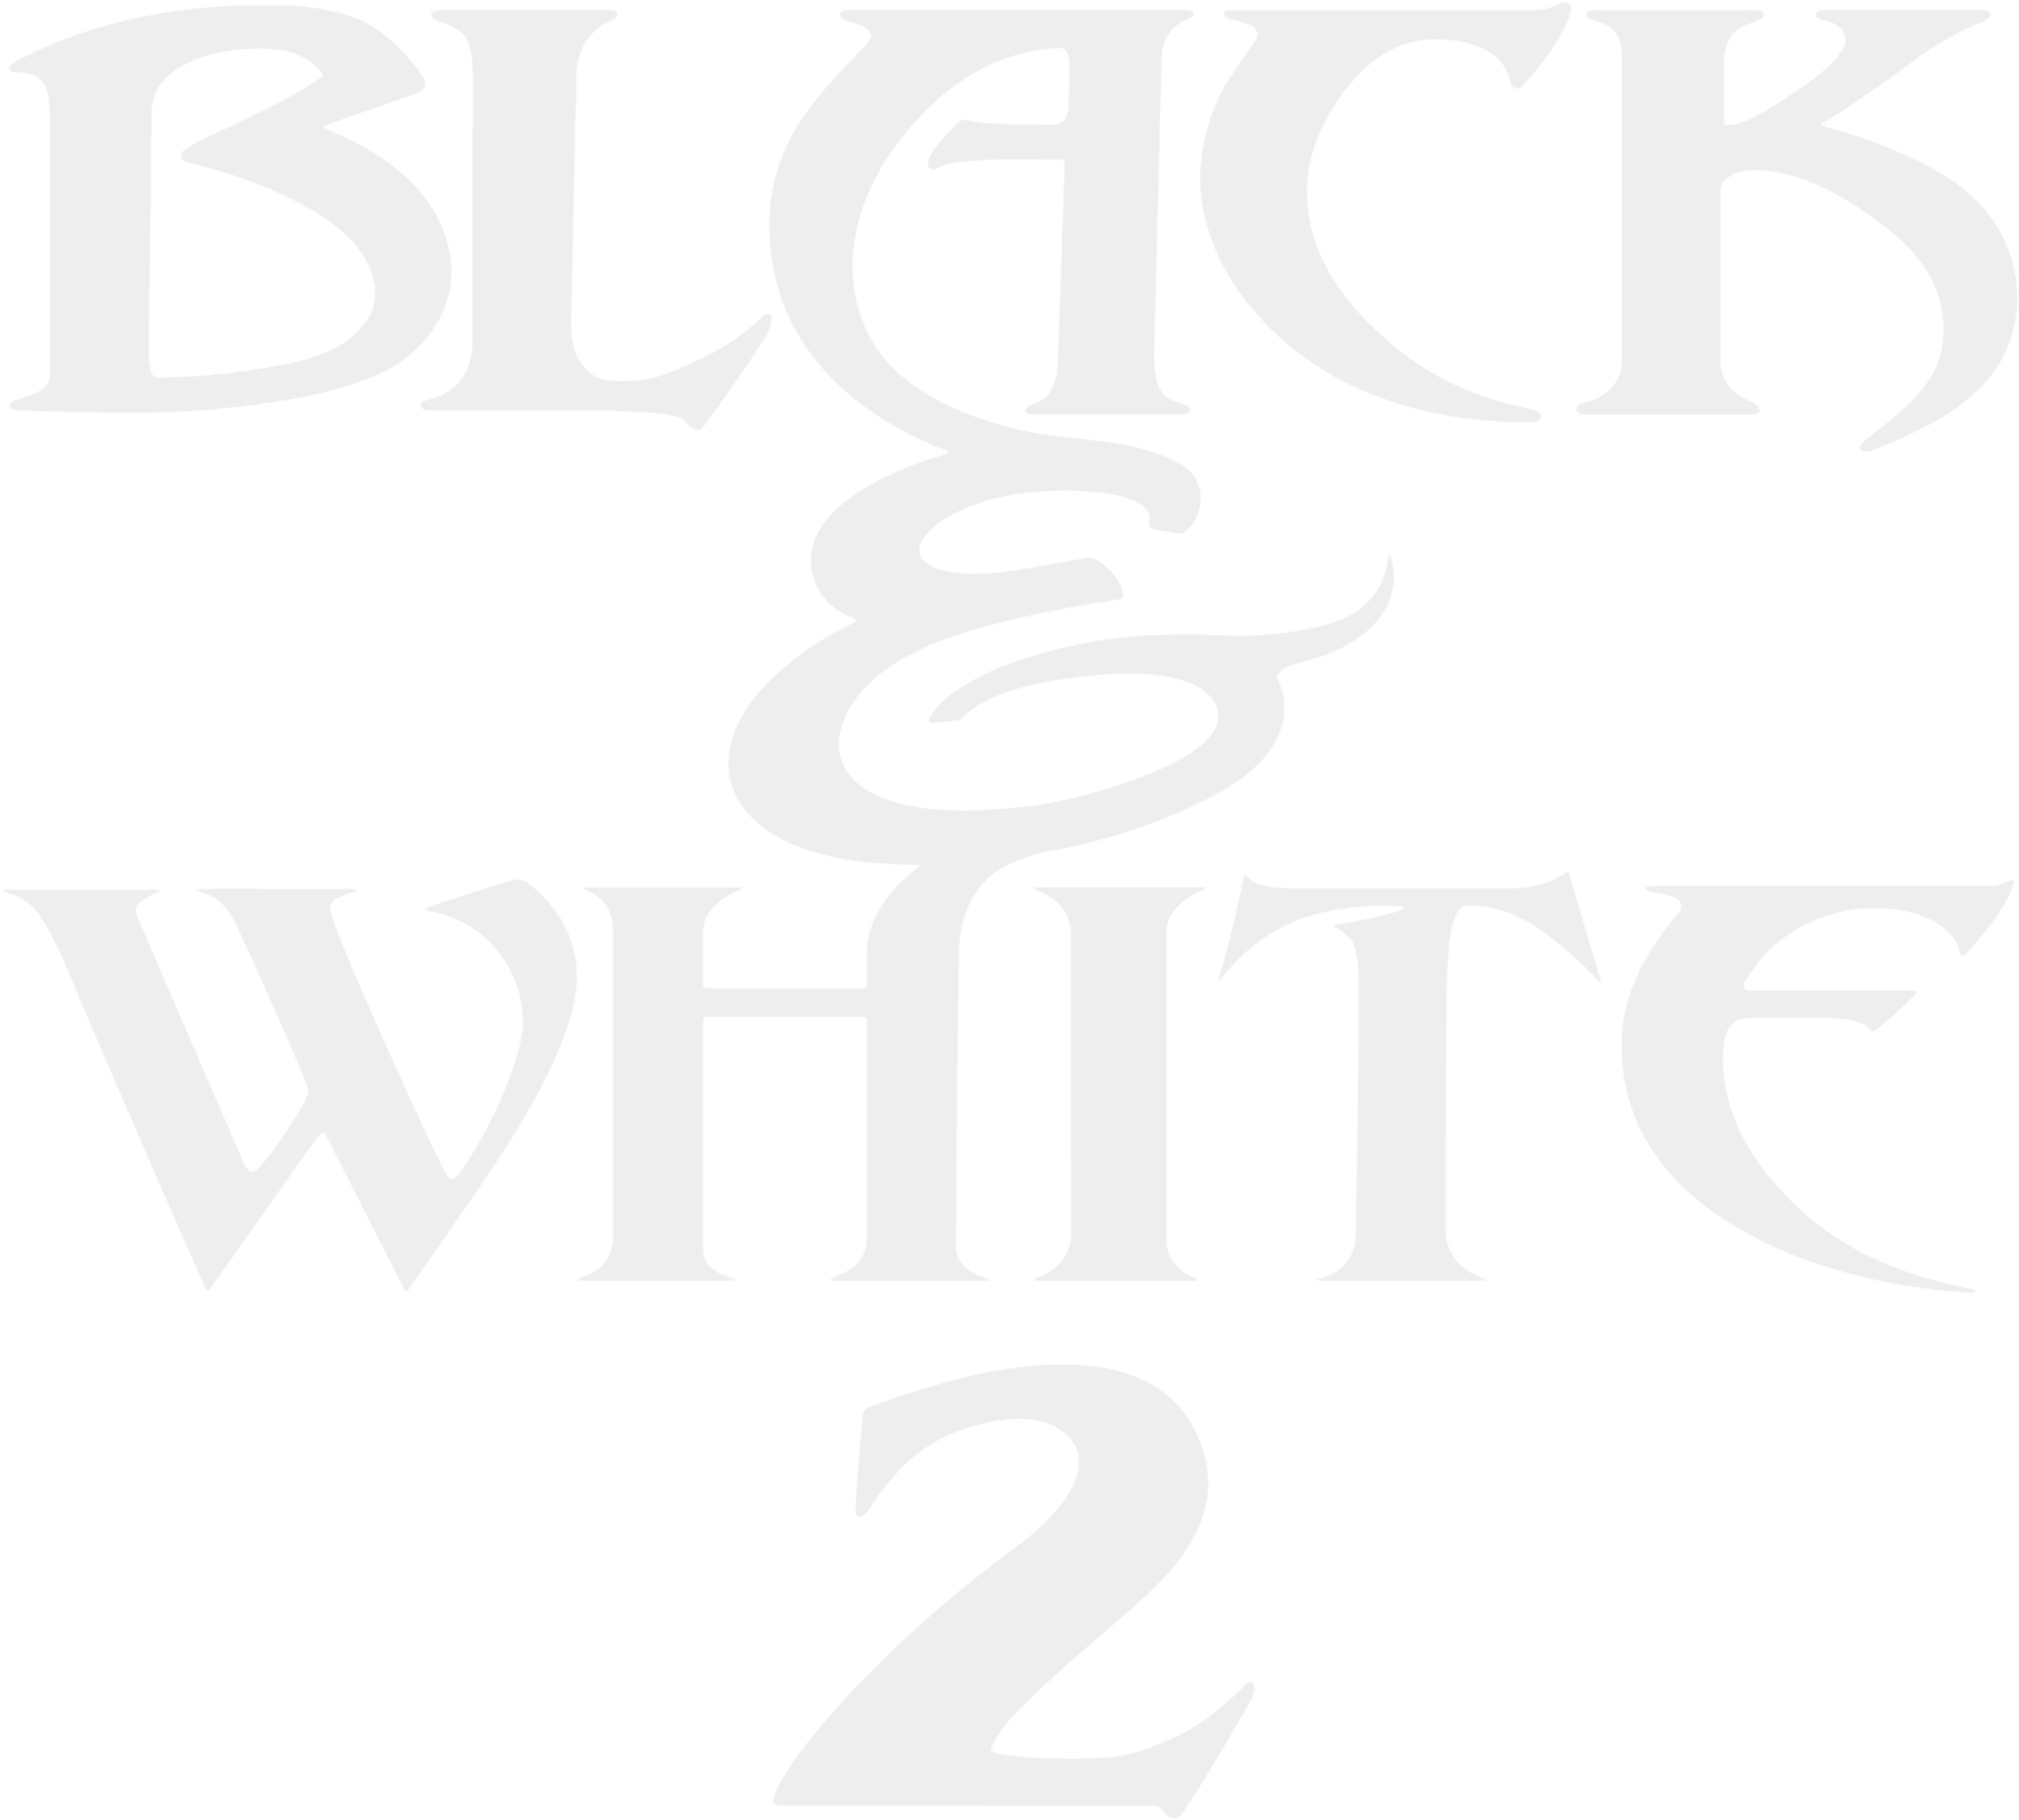 Black & White 2